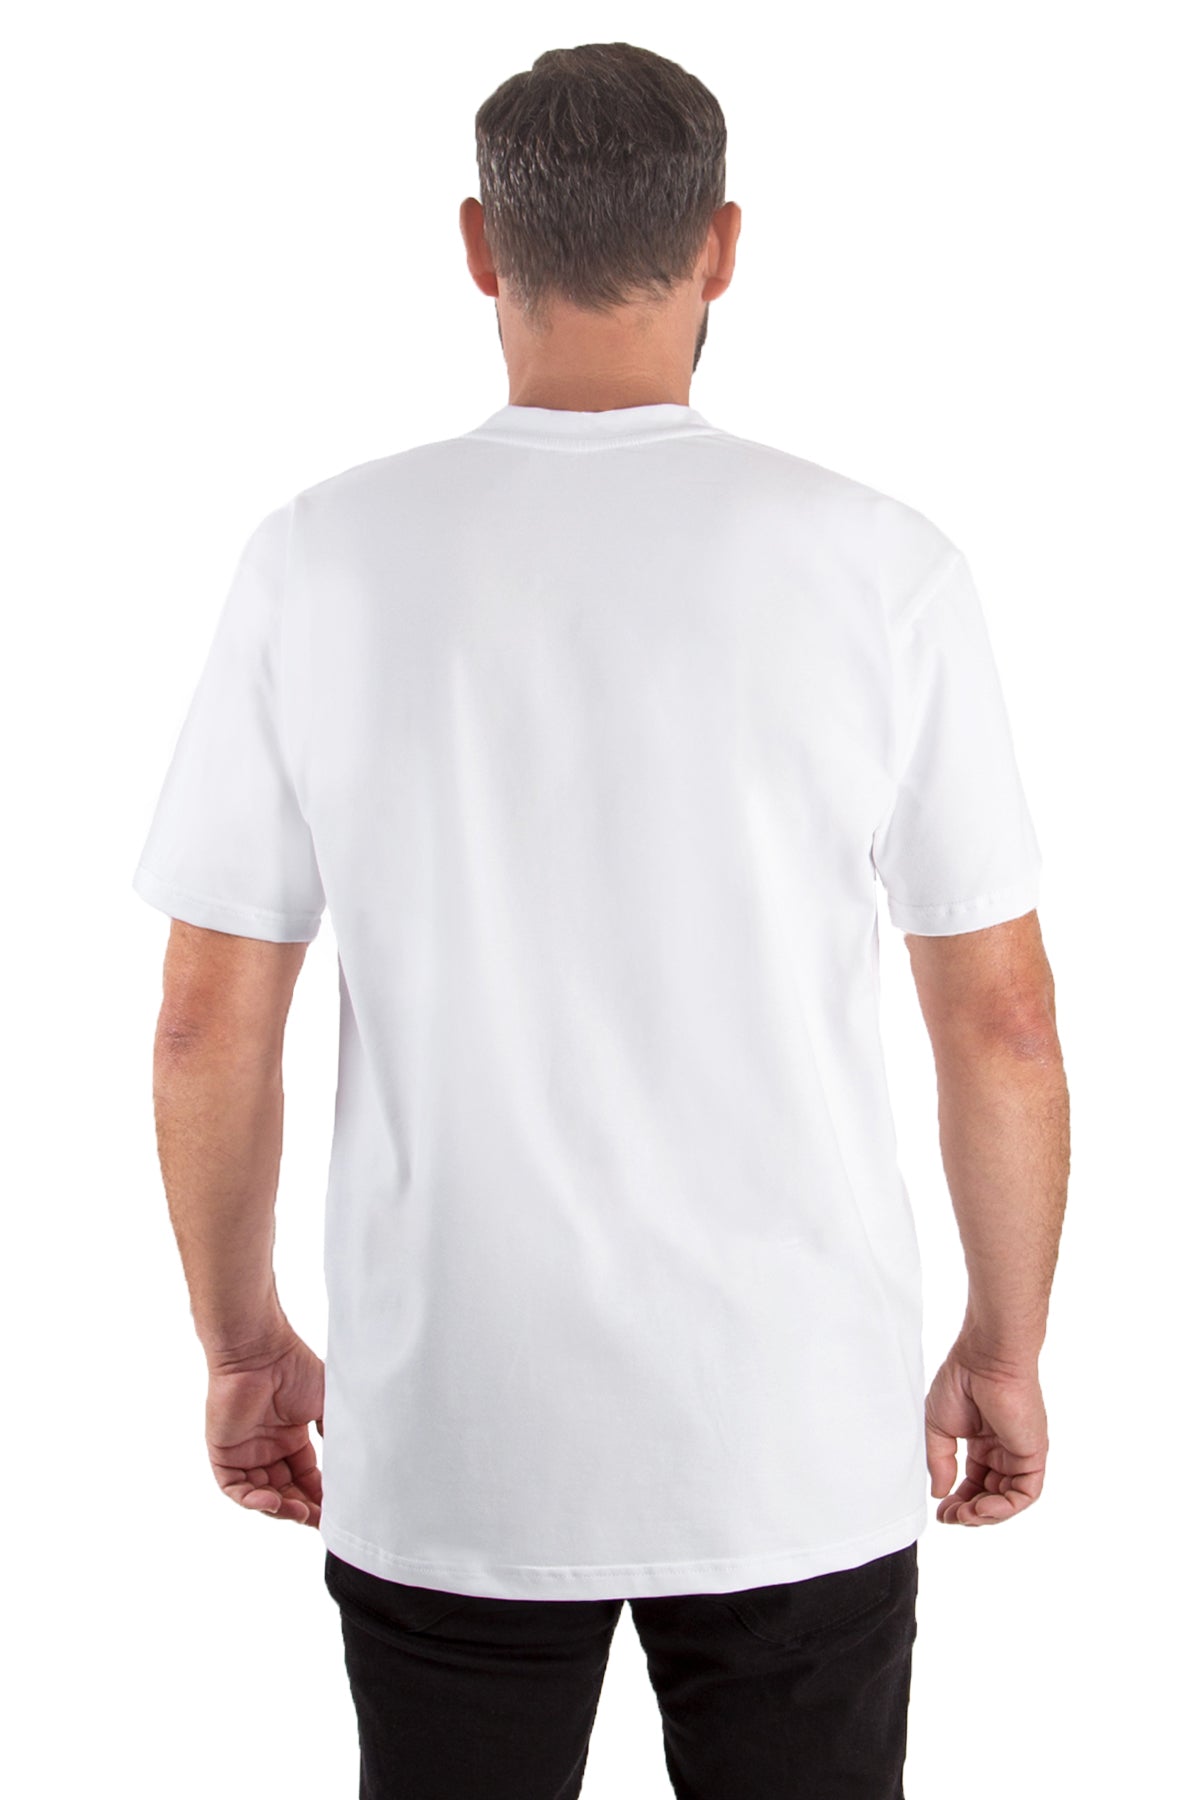 T-Shirt V-Neck (10er-Pack) - nightblue